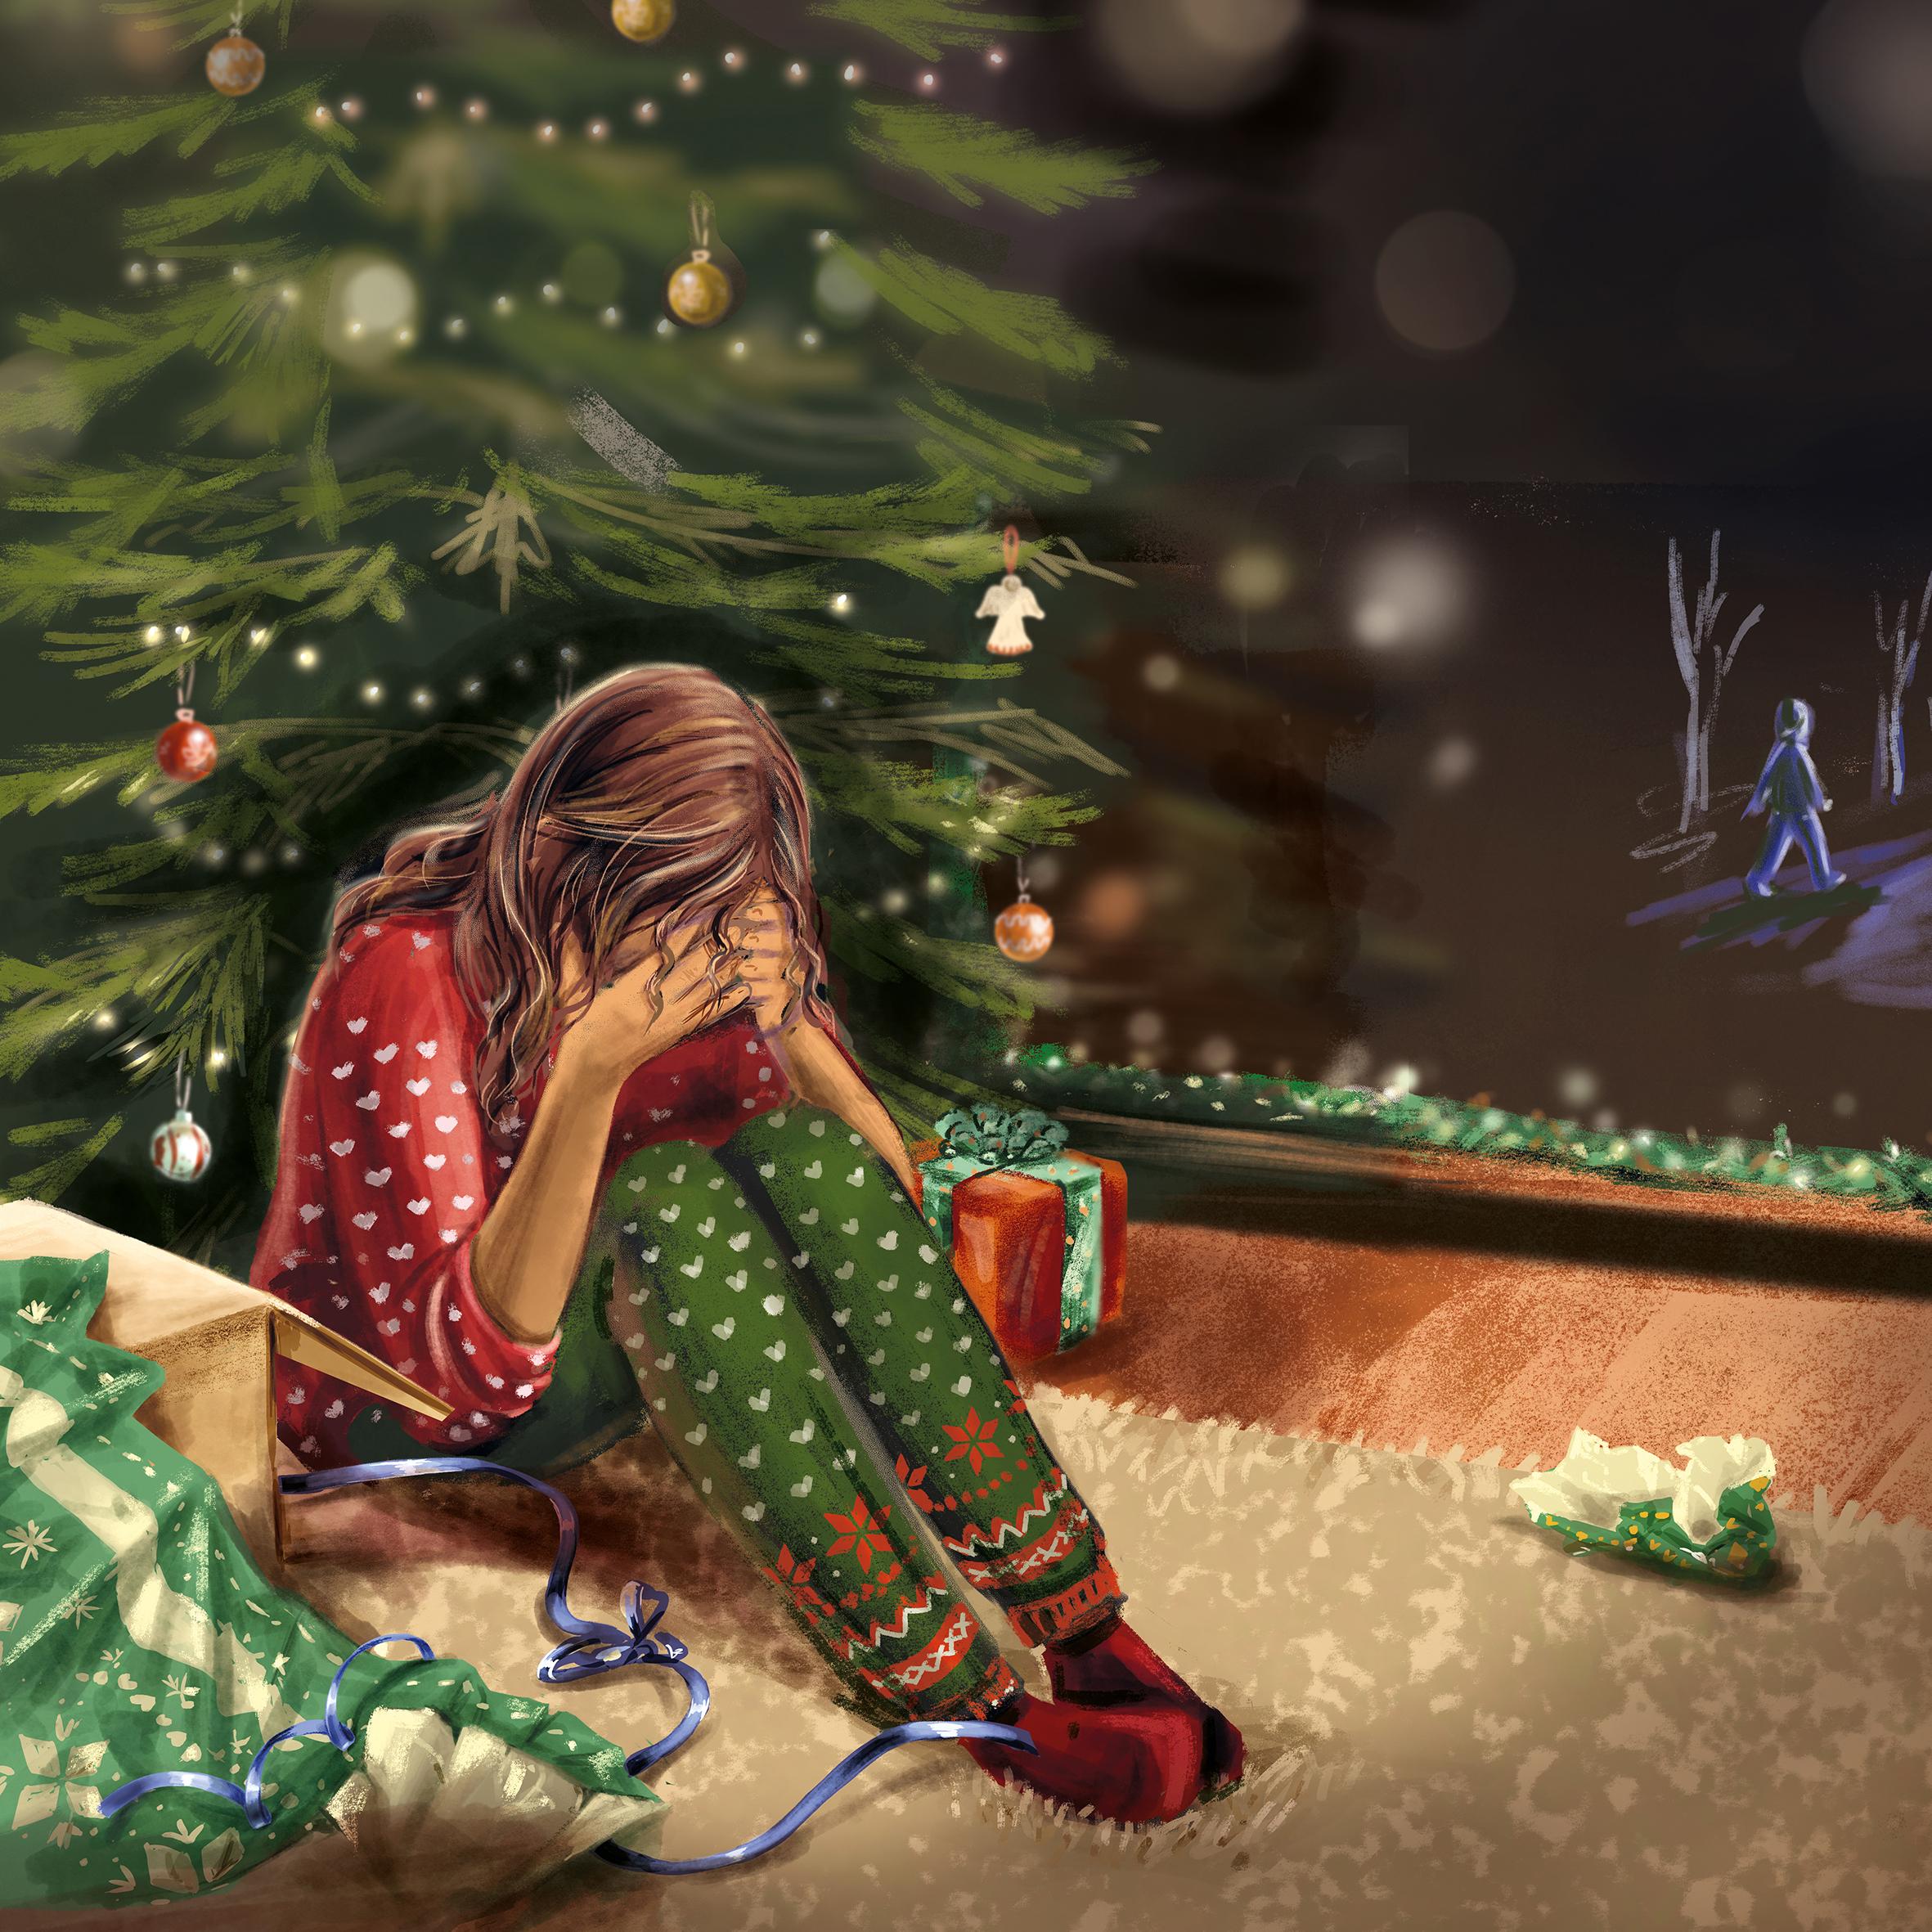 Mädchen sitzt traurig unter dem Weihnachtsbaum zwischen ausgepackten und unausgepackten Geschenken